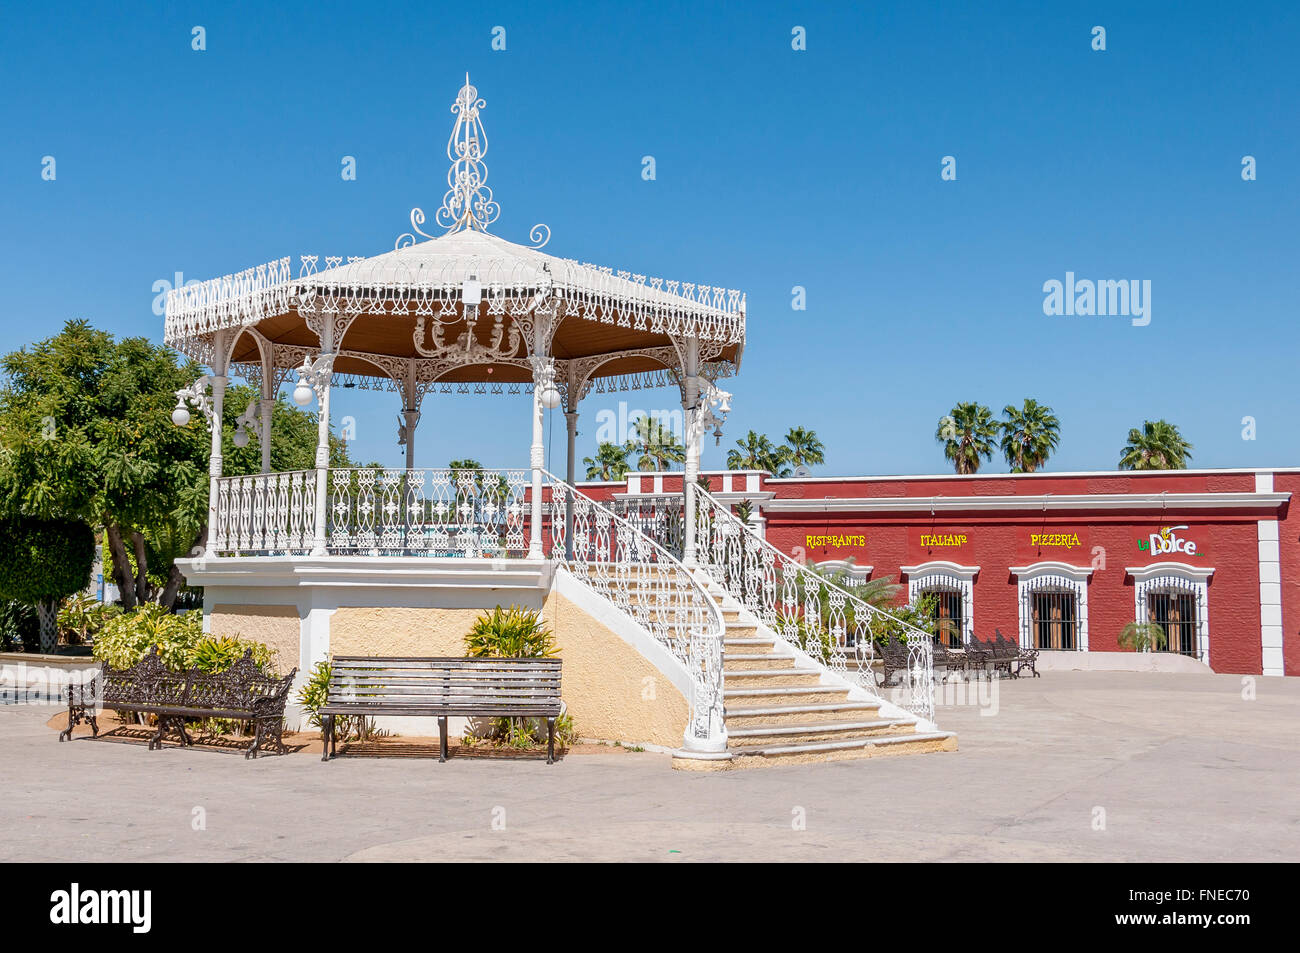 Le kiosko ou gazebo dans San Jose del Cabo's place principale dans la vieille ville, avec des bancs à côté et derrière le restaurant rouge coloré. Banque D'Images